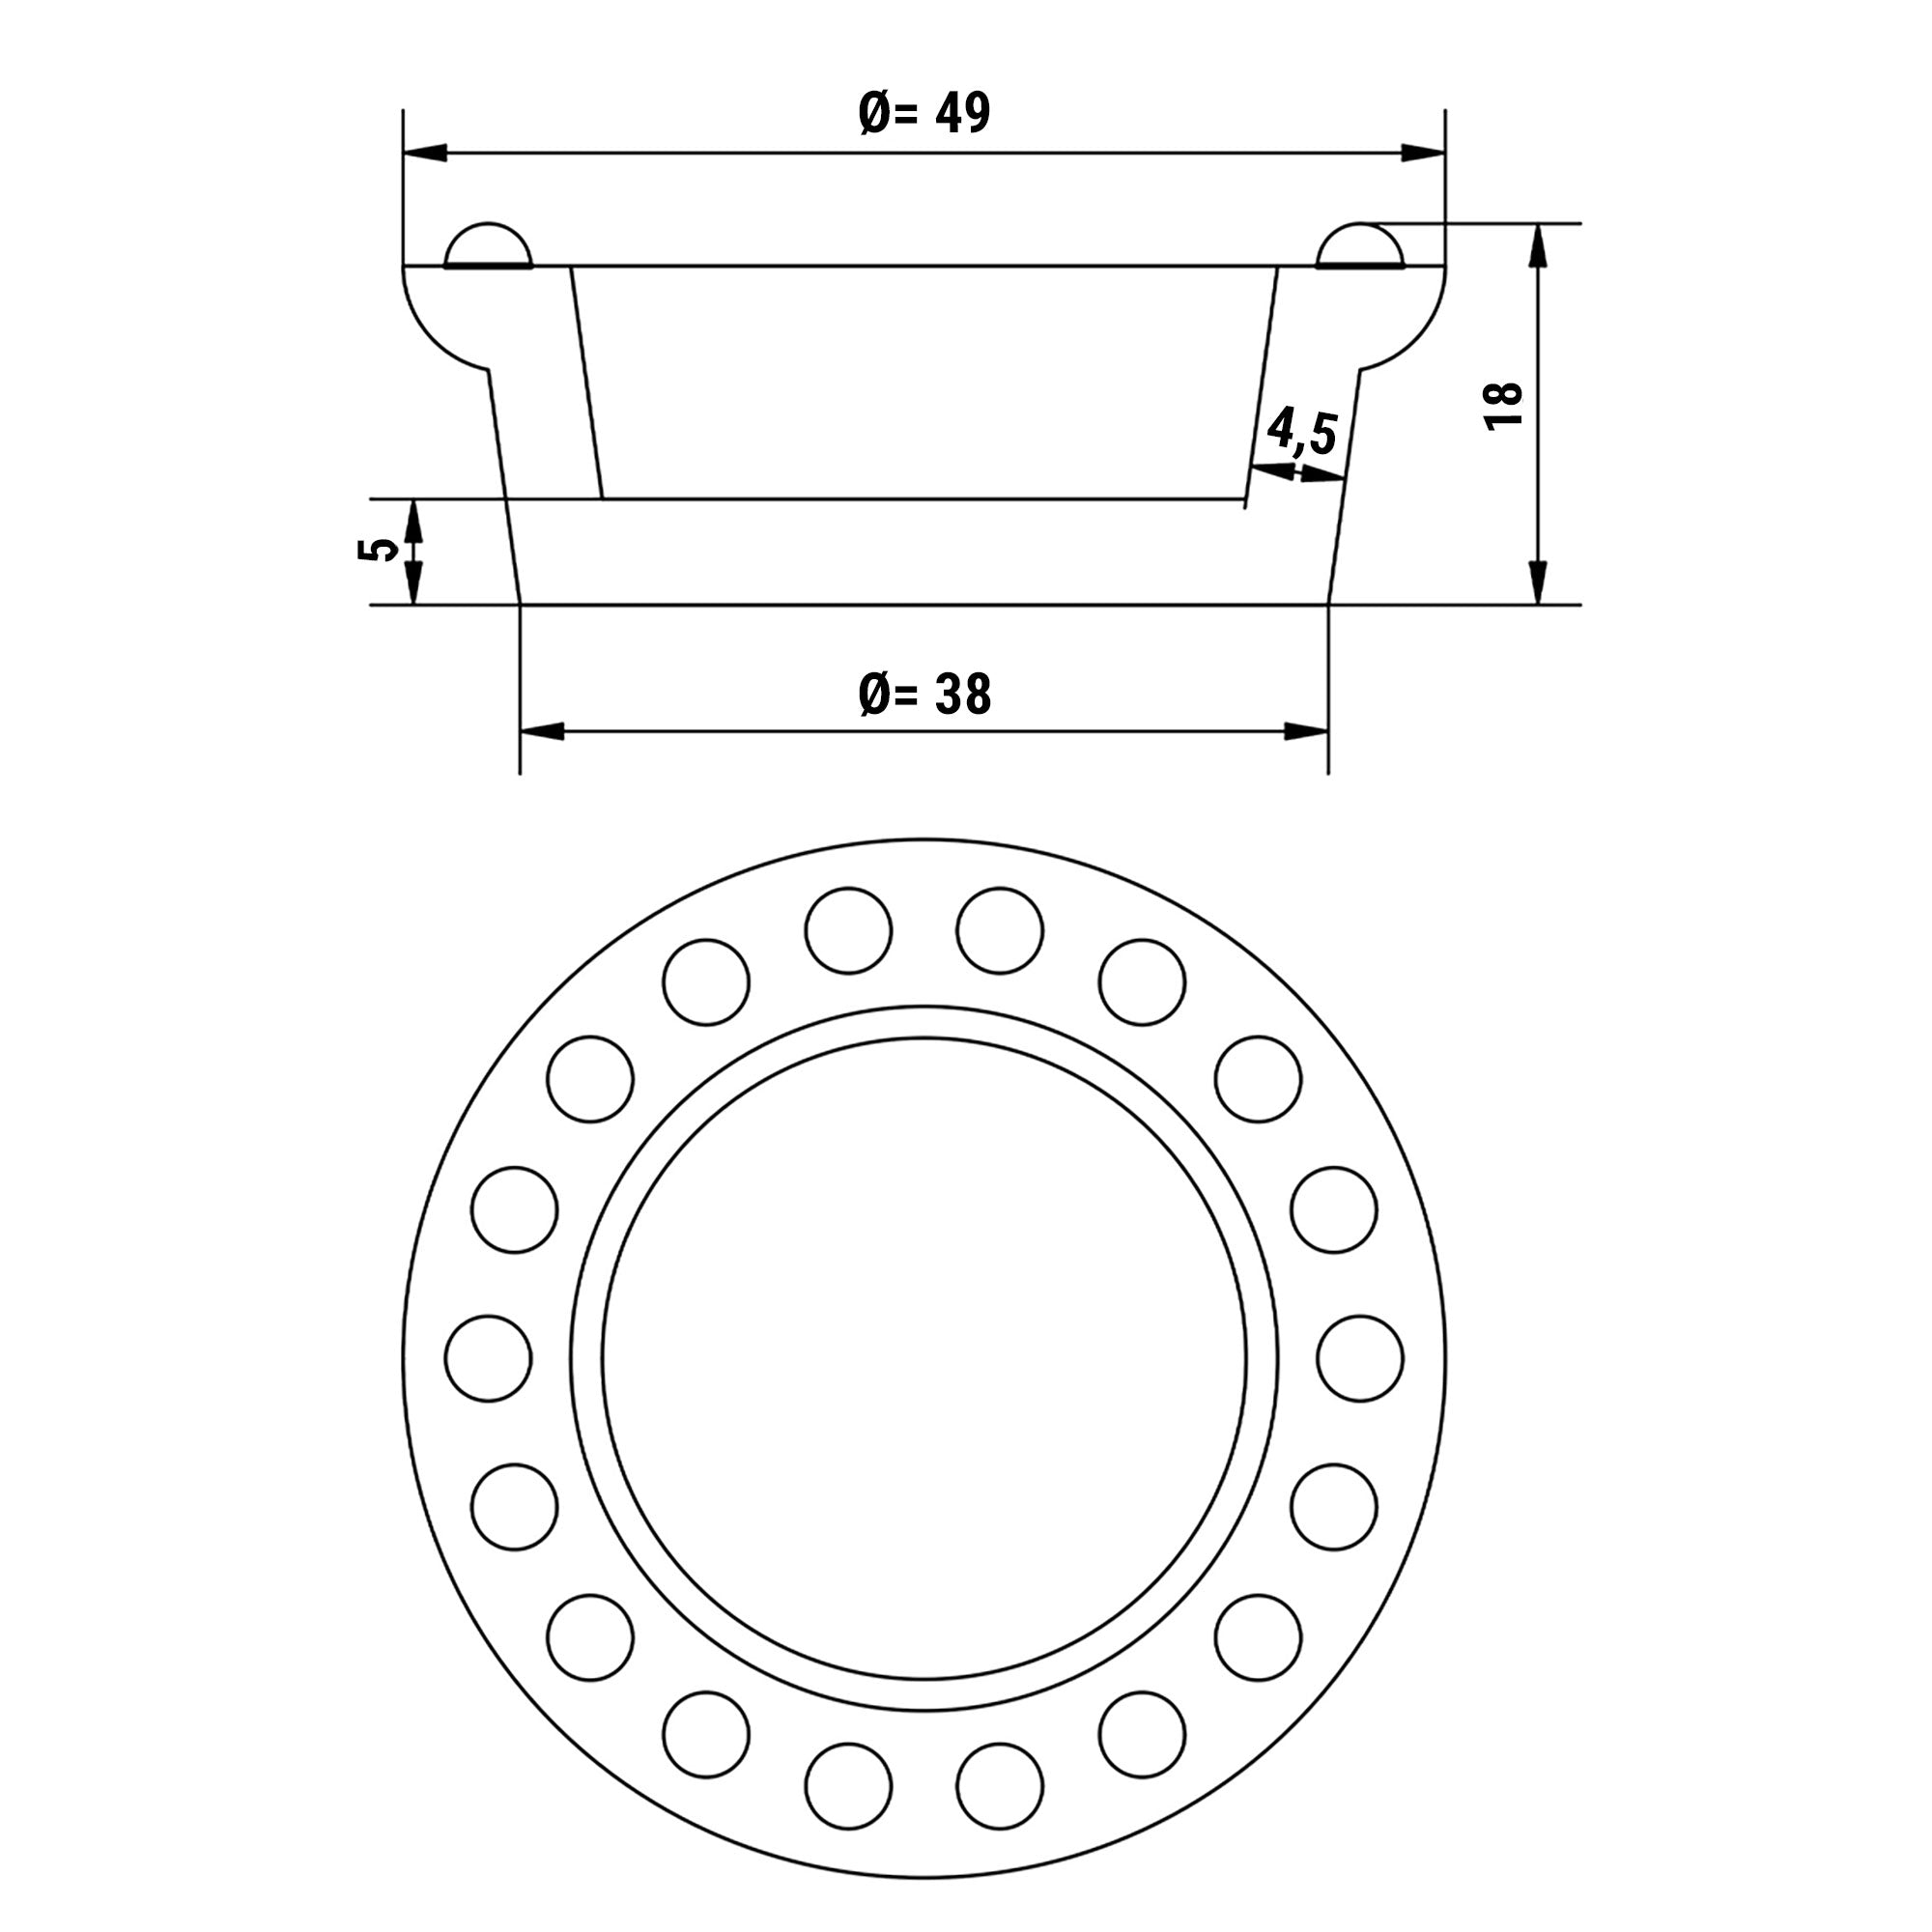 Plade til Tarteletmaskine - Form: Rund - Top Ø: 49 mm, Bund Ø: 38 mm / Højde: 18 mm